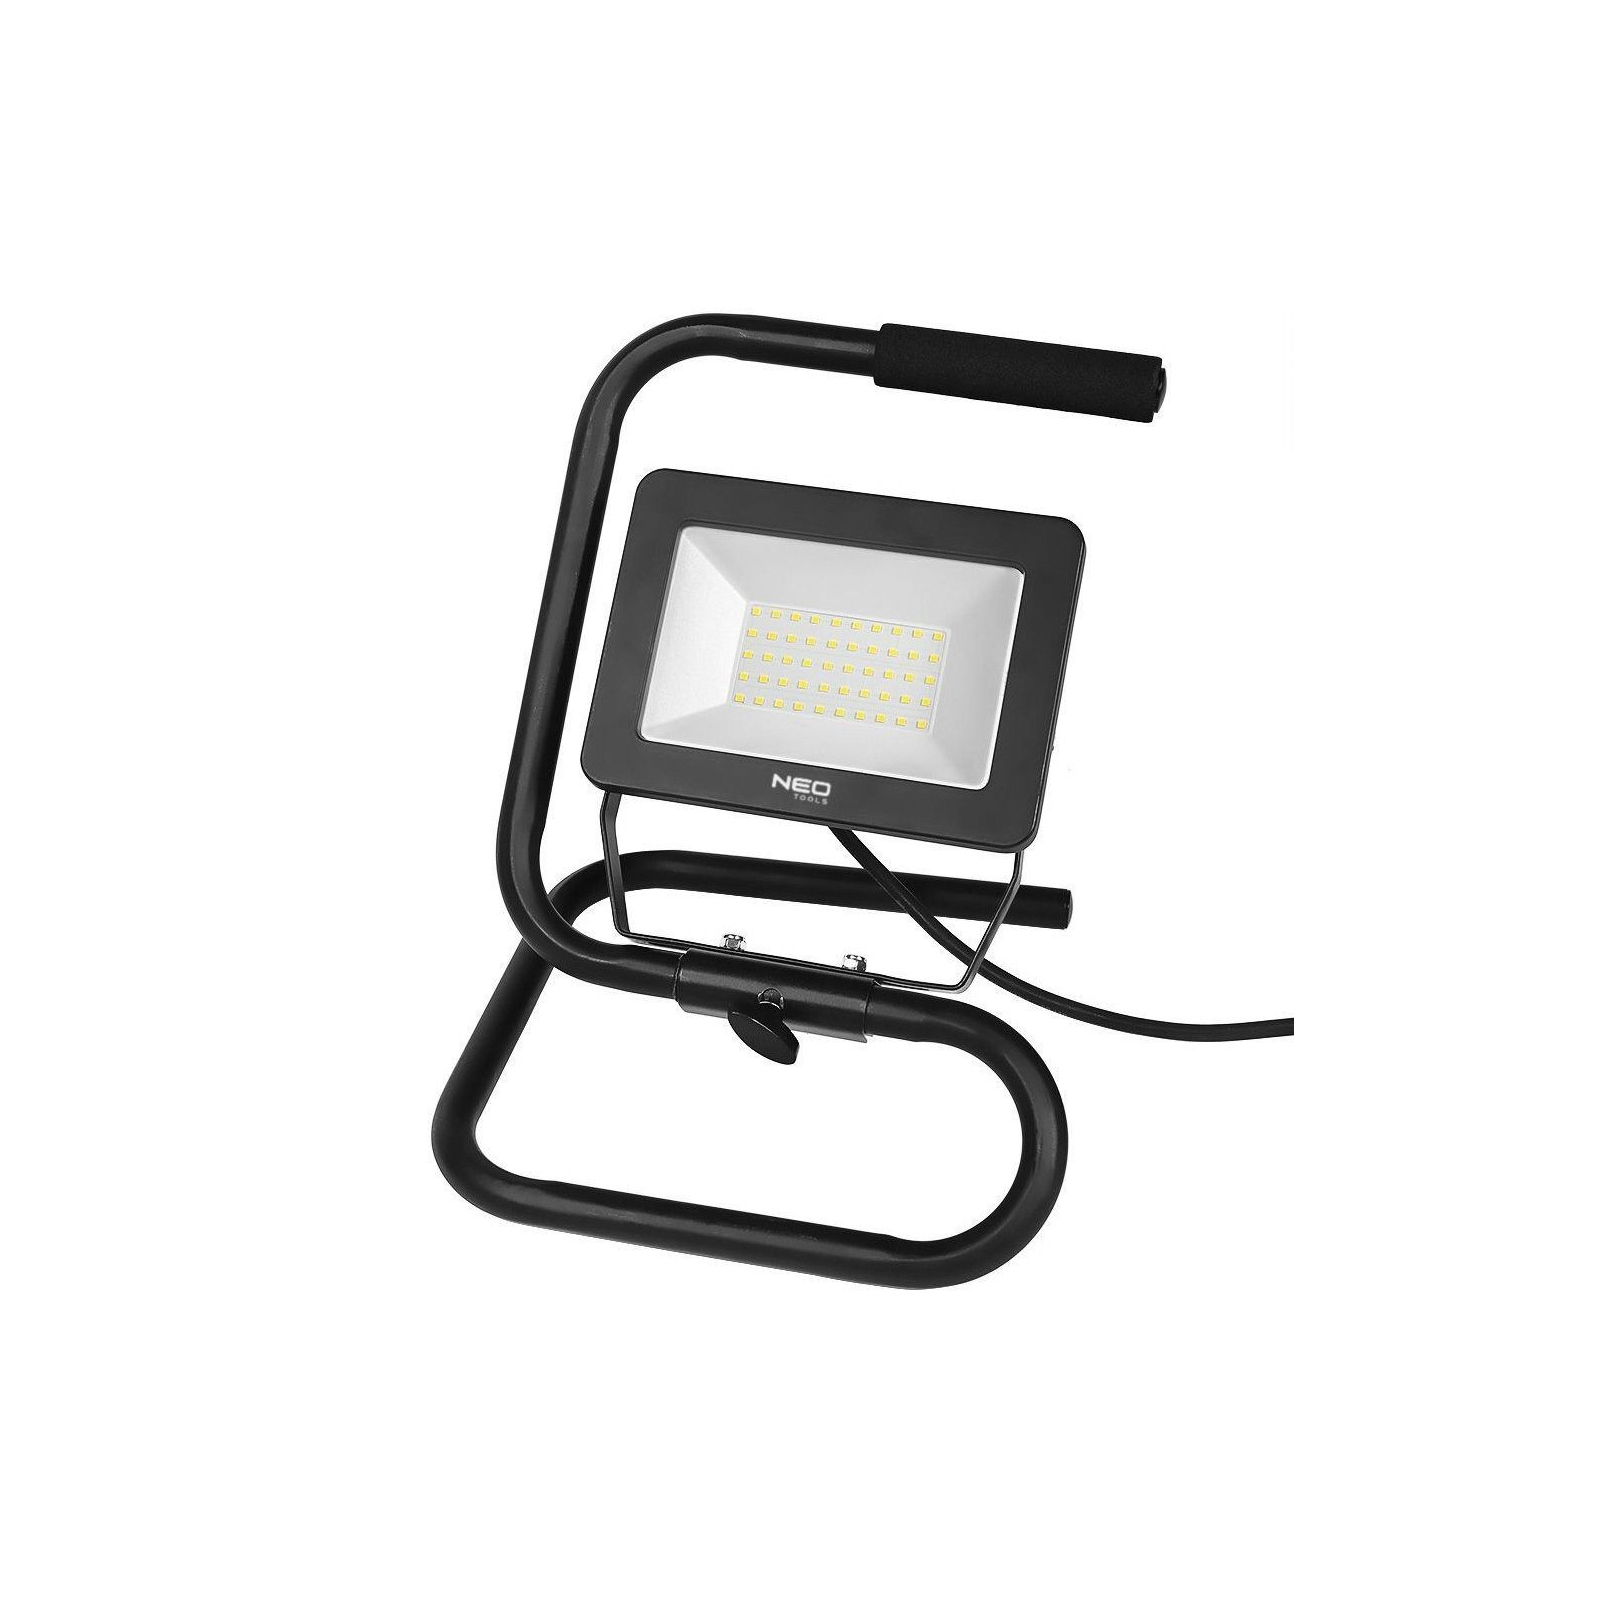 Прожектор Neo Tools алюминий 220В 50Вт 4500 люмен SMD LED, кабель 2 м с вилкой (99-063) изображение 2